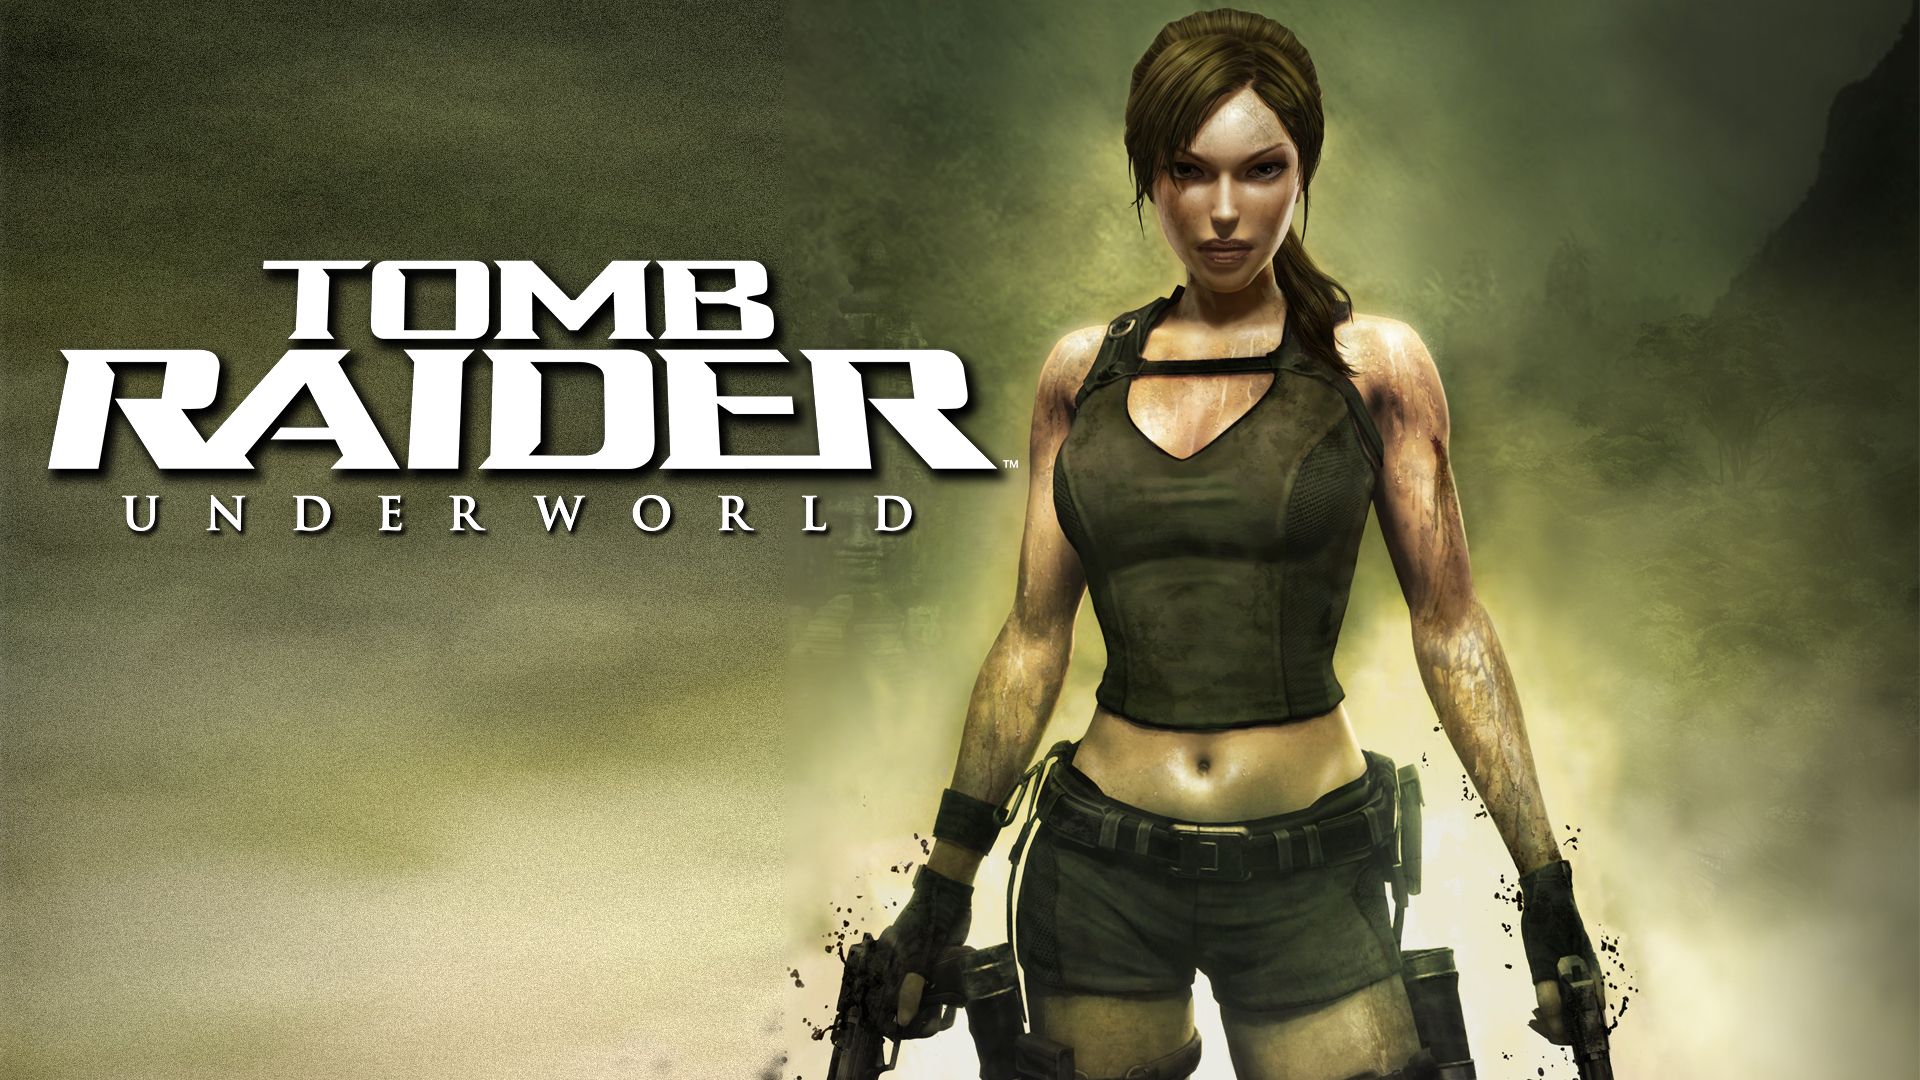 Прохождение игры Tomb Raider: Underworld # 4. HD - Full 1080p. (Русская версия игры)